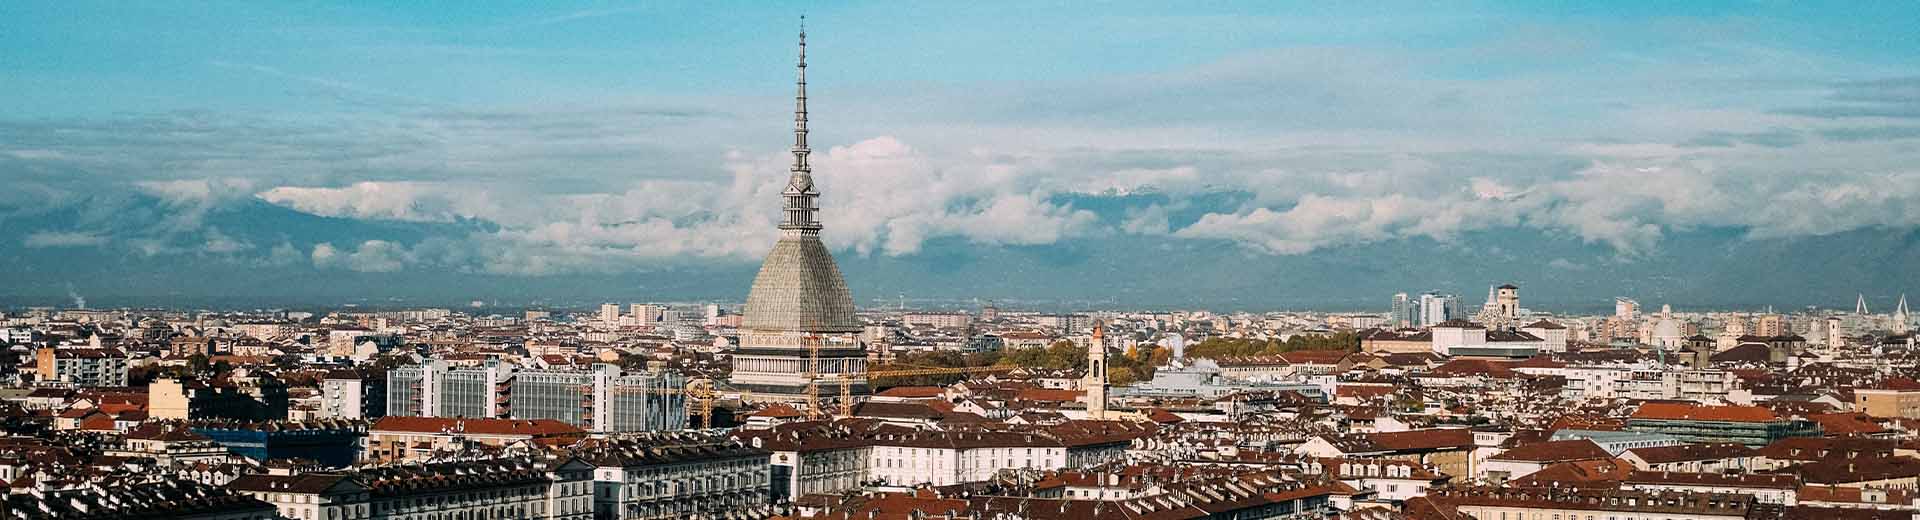 Belle ville de Turin par une journée d'été claire. Les cathédrales et les flèches de l'église sont abondantes.